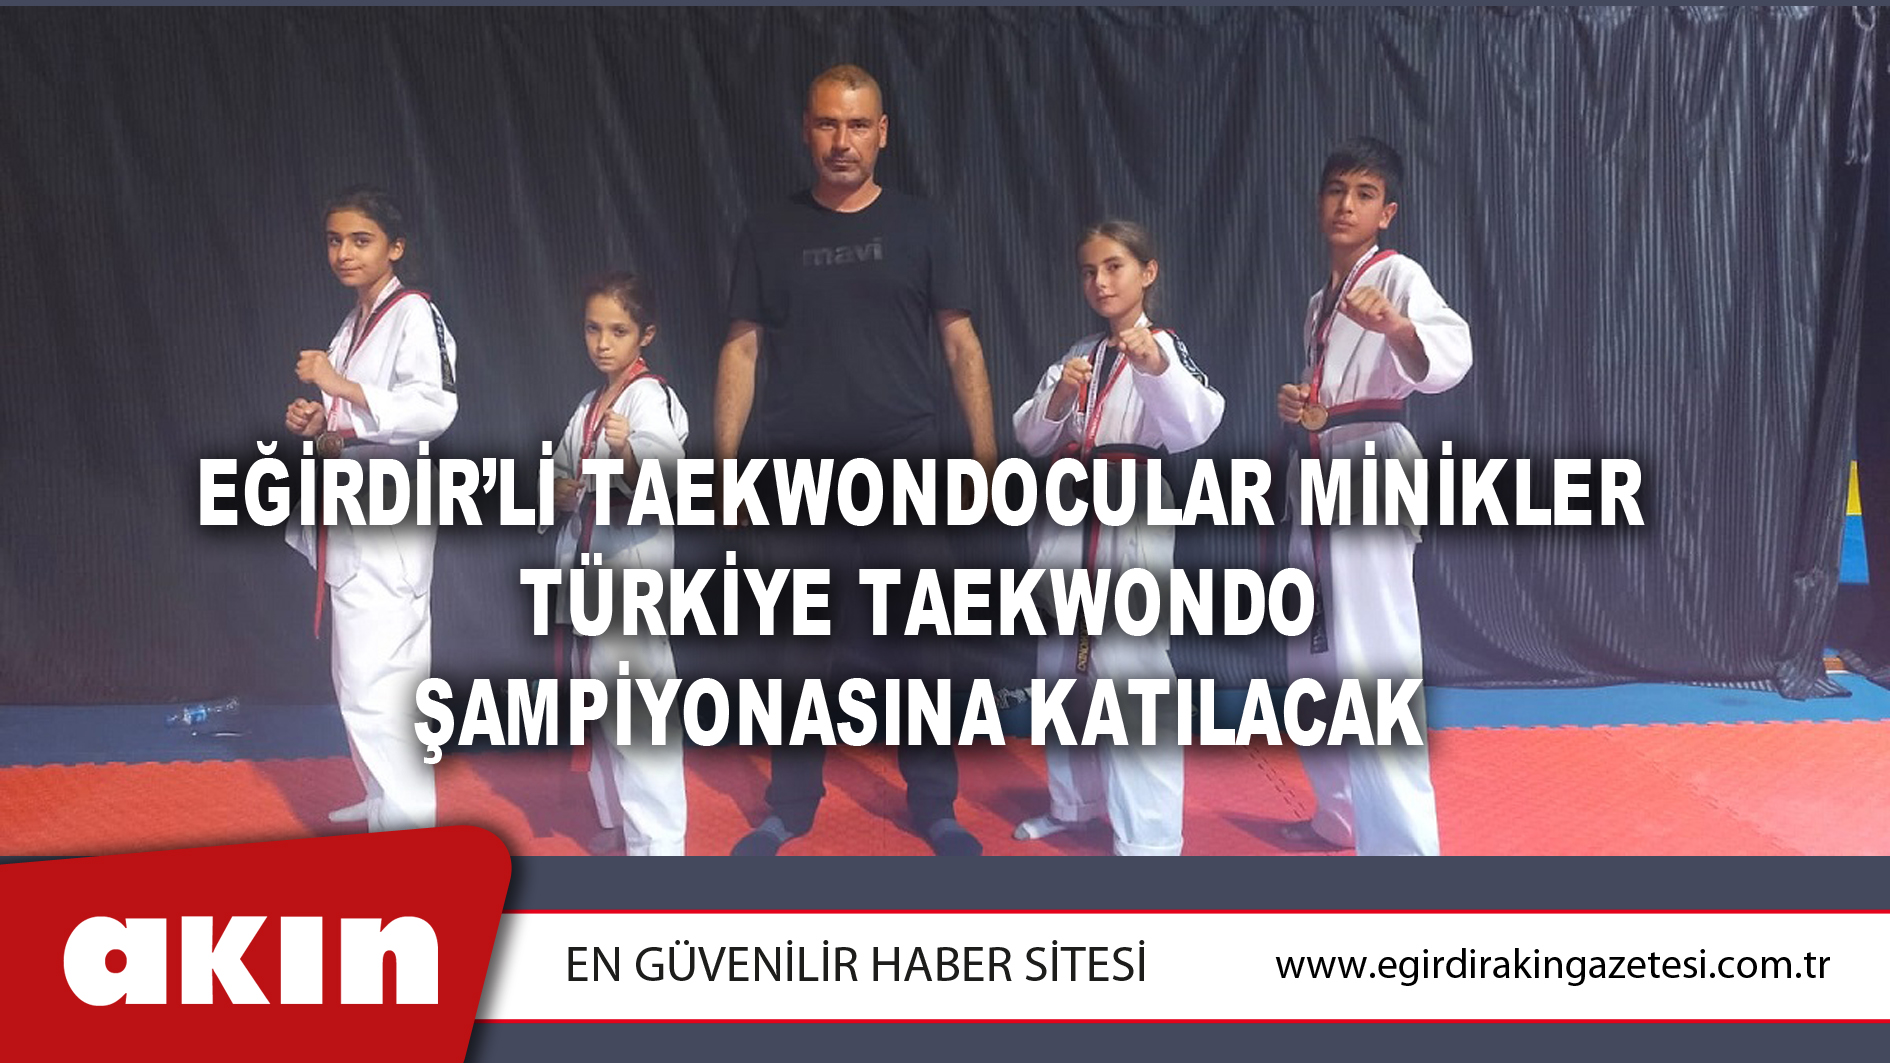 eğirdir haber,akın gazetesi,egirdir haberler,son dakika,Eğirdir’li Taekwondocular Minikler Türkiye Taekwondo Şampiyonasına Katılacak